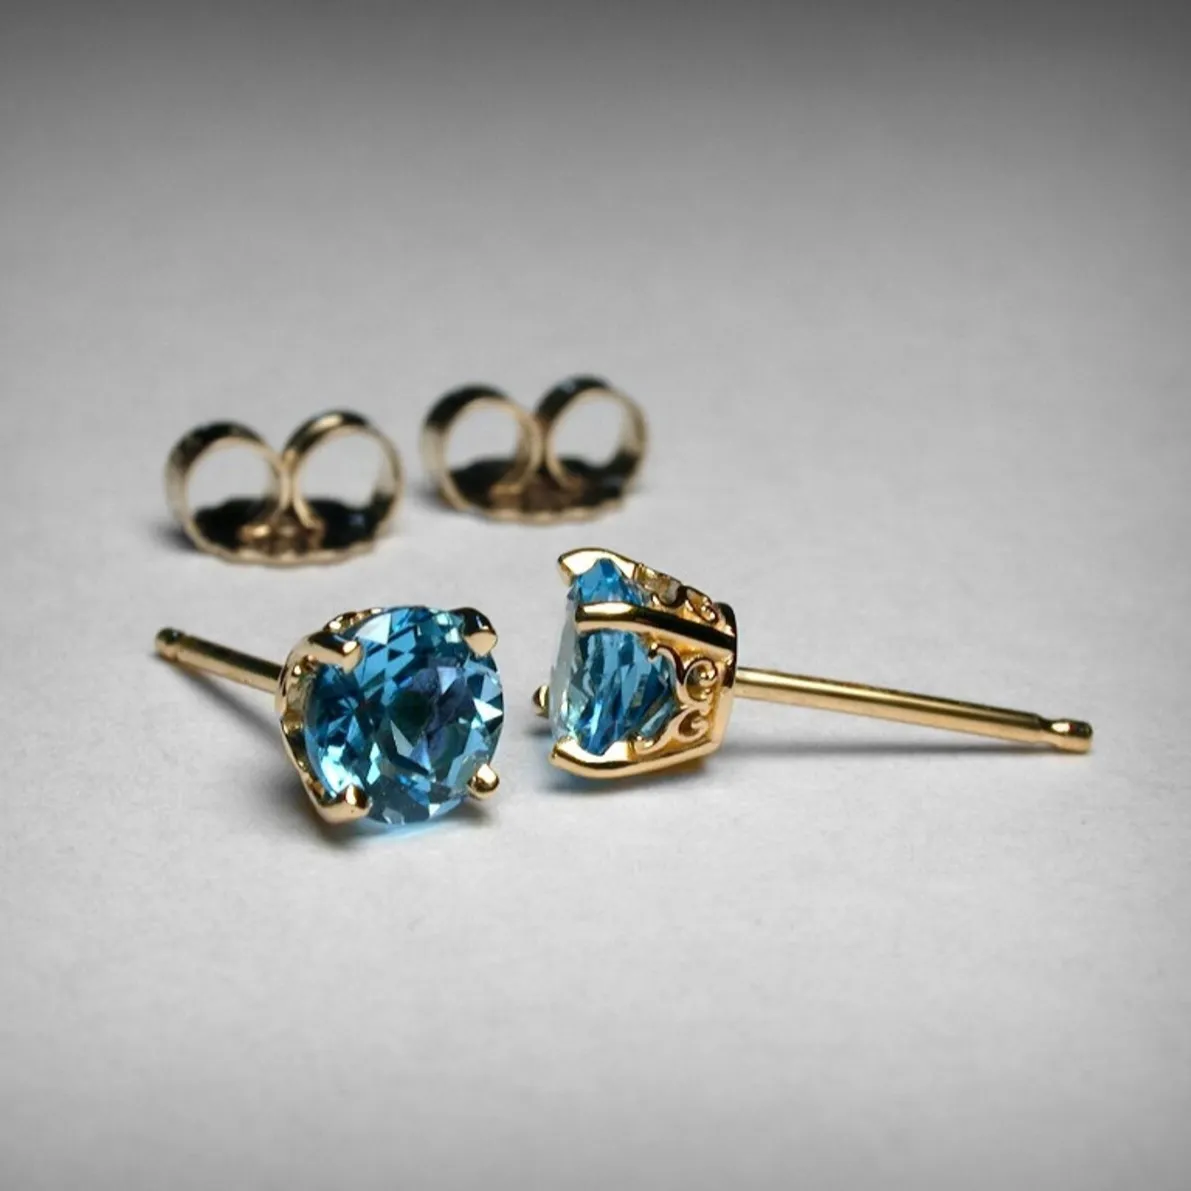 Desain baru anting-anting batu permata Topaz biru alami bentuk bulat perhiasan modis grosir Online batu permata perak murni 925